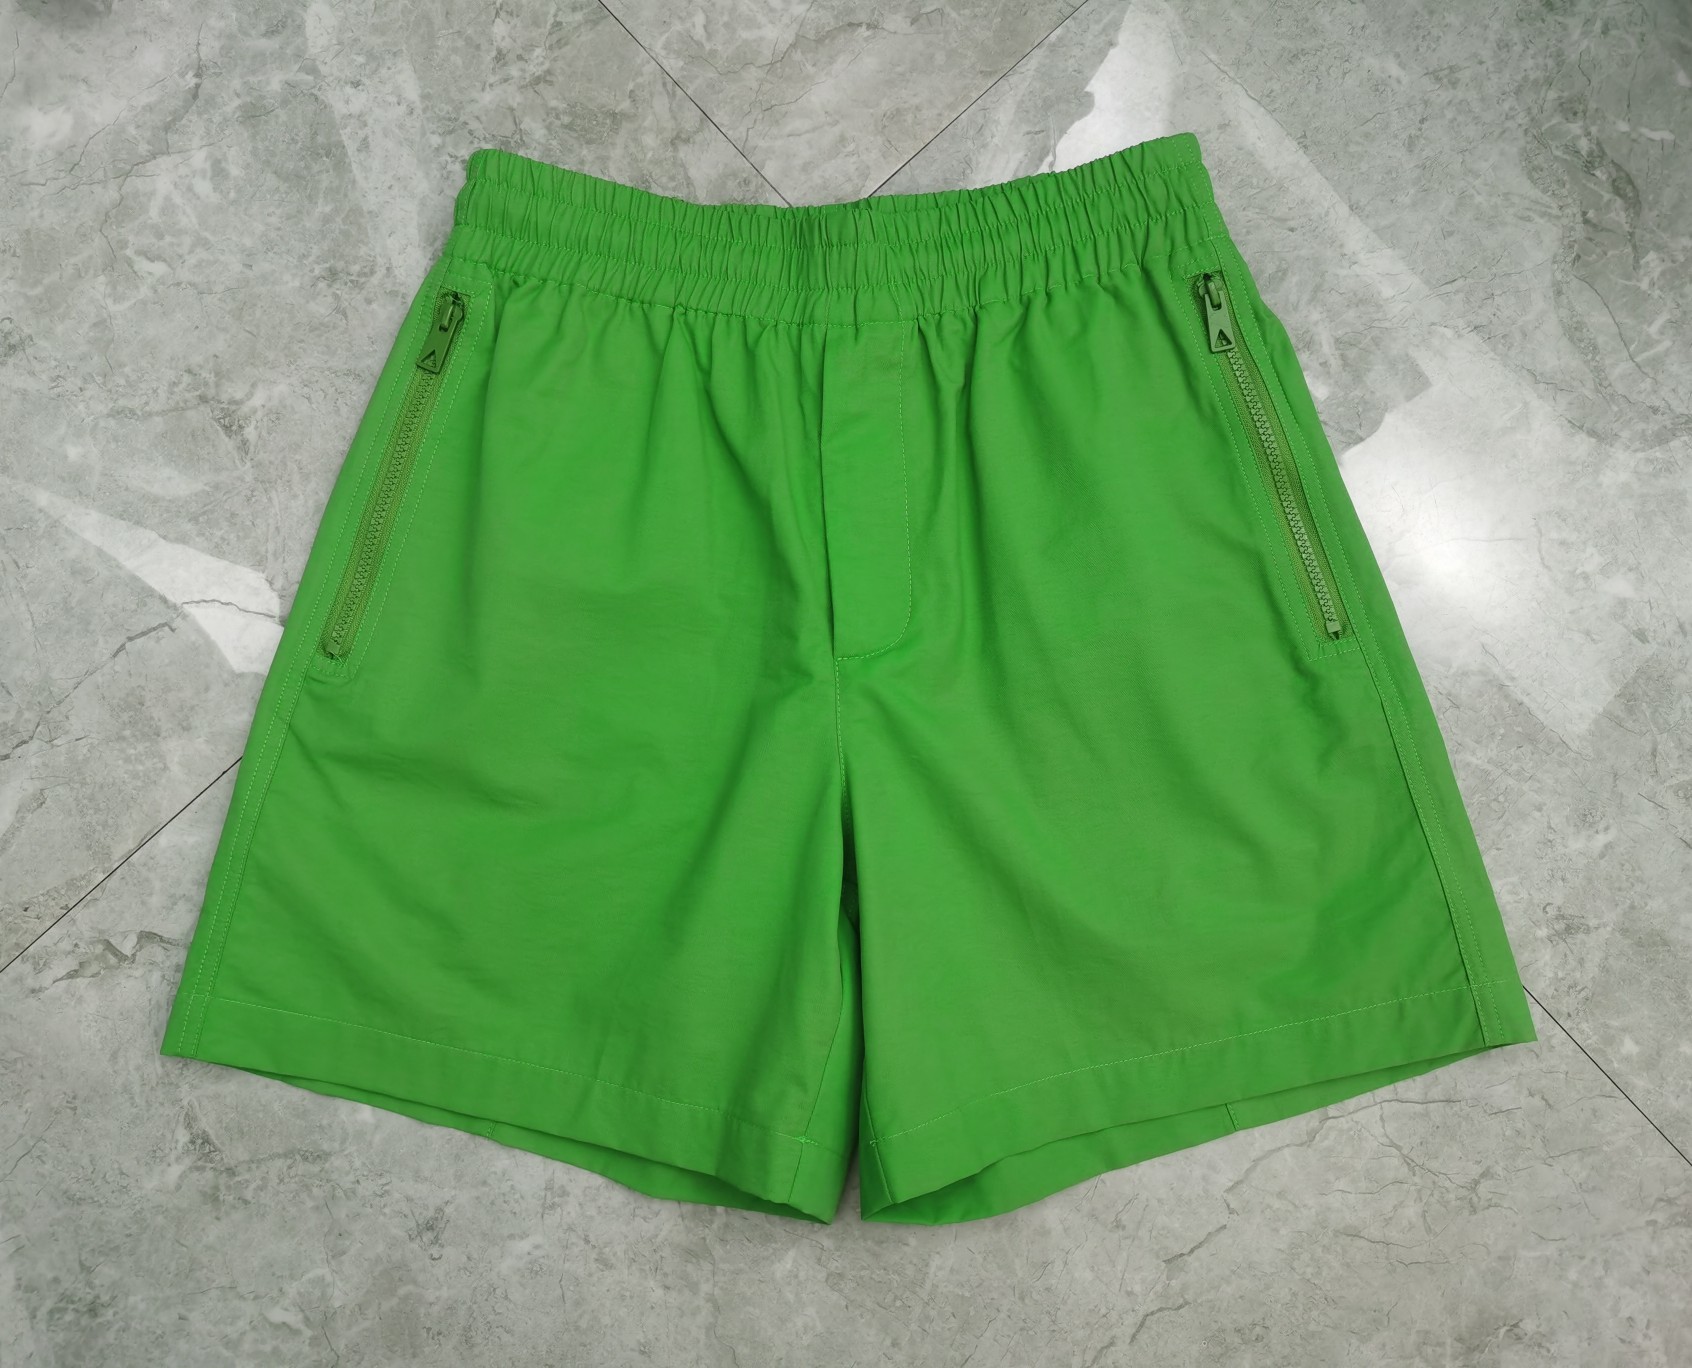 BV 休闲短裤 纯棉面料 定做五金 三角口袋 简约百搭 黑色 绿色 S-XL(实物颜色更佳)